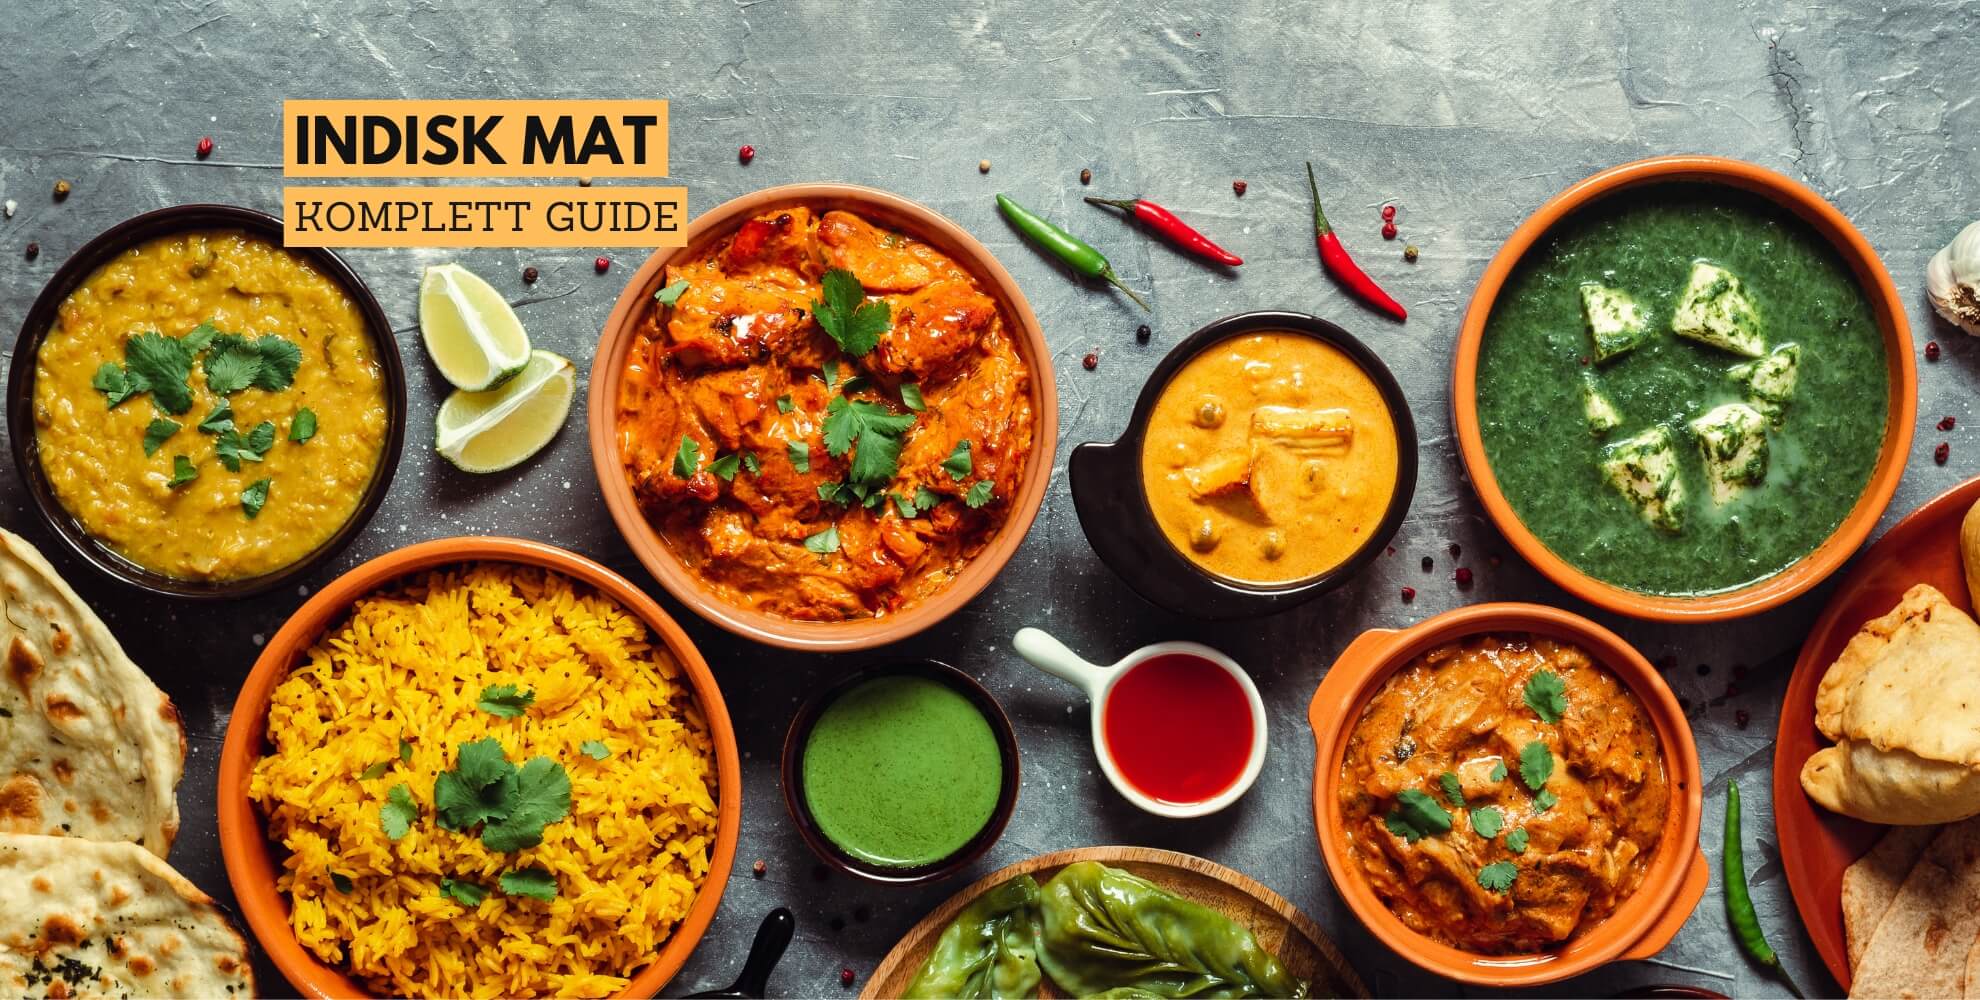 Bilde av mat fra India og tekst: indisk mat, komplett guide.